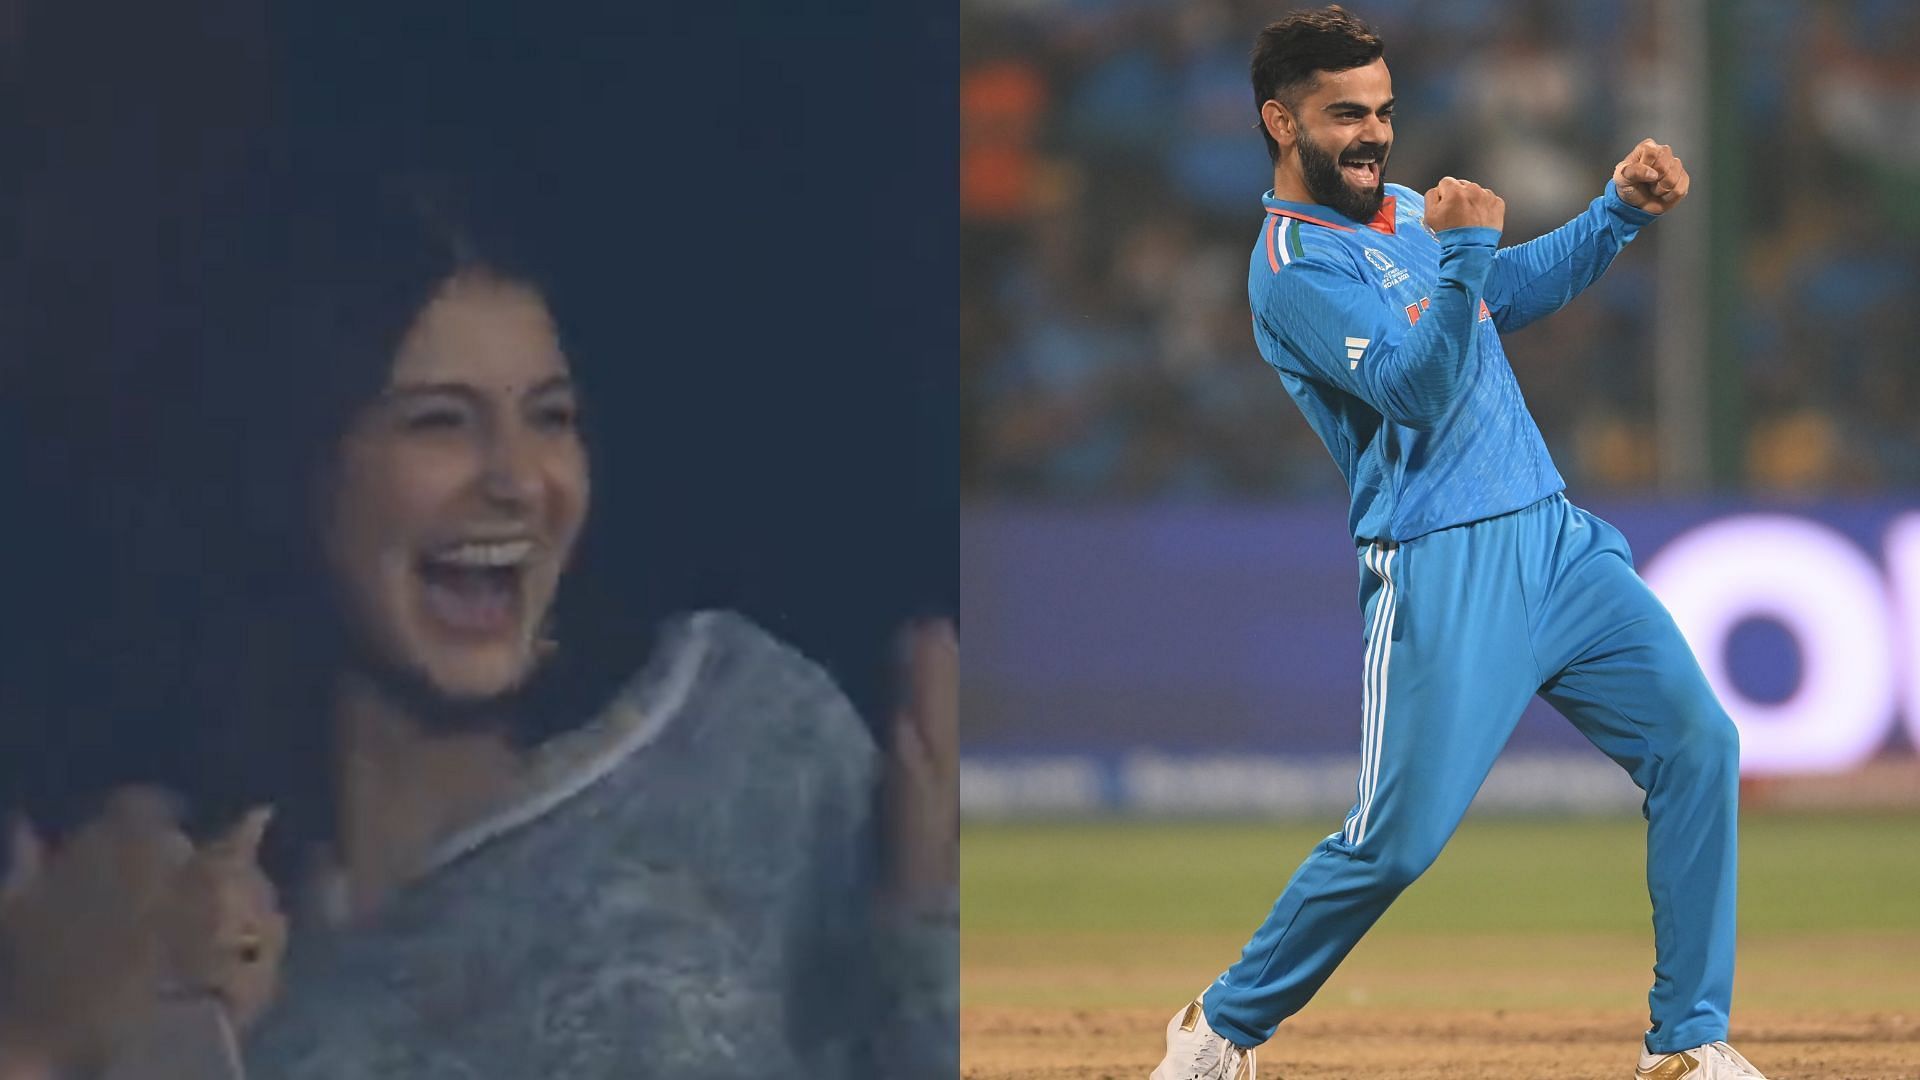 [Watch] Anushka Sharma thrilled as Virat Kohli picks up a wicket during ...